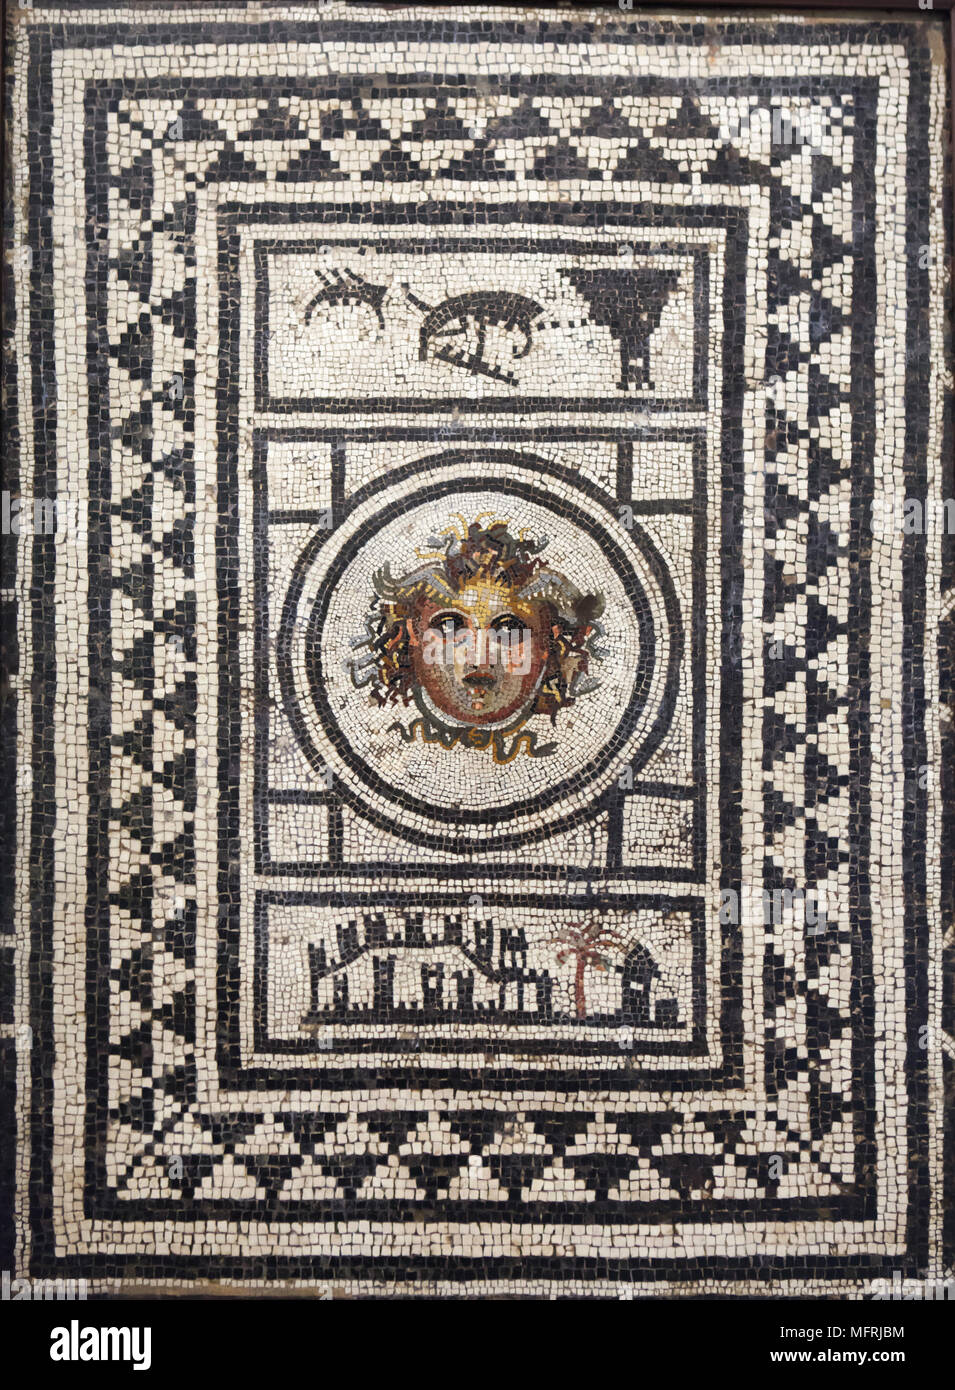 Kopf der Medusa in der römischen Mosaik aus Pompeji dargestellt, nun im Nationalen Archäologischen Museum (Museo Archeologico Nazionale di Napoli) in Neapel, Kampanien, Italien. Stockfoto